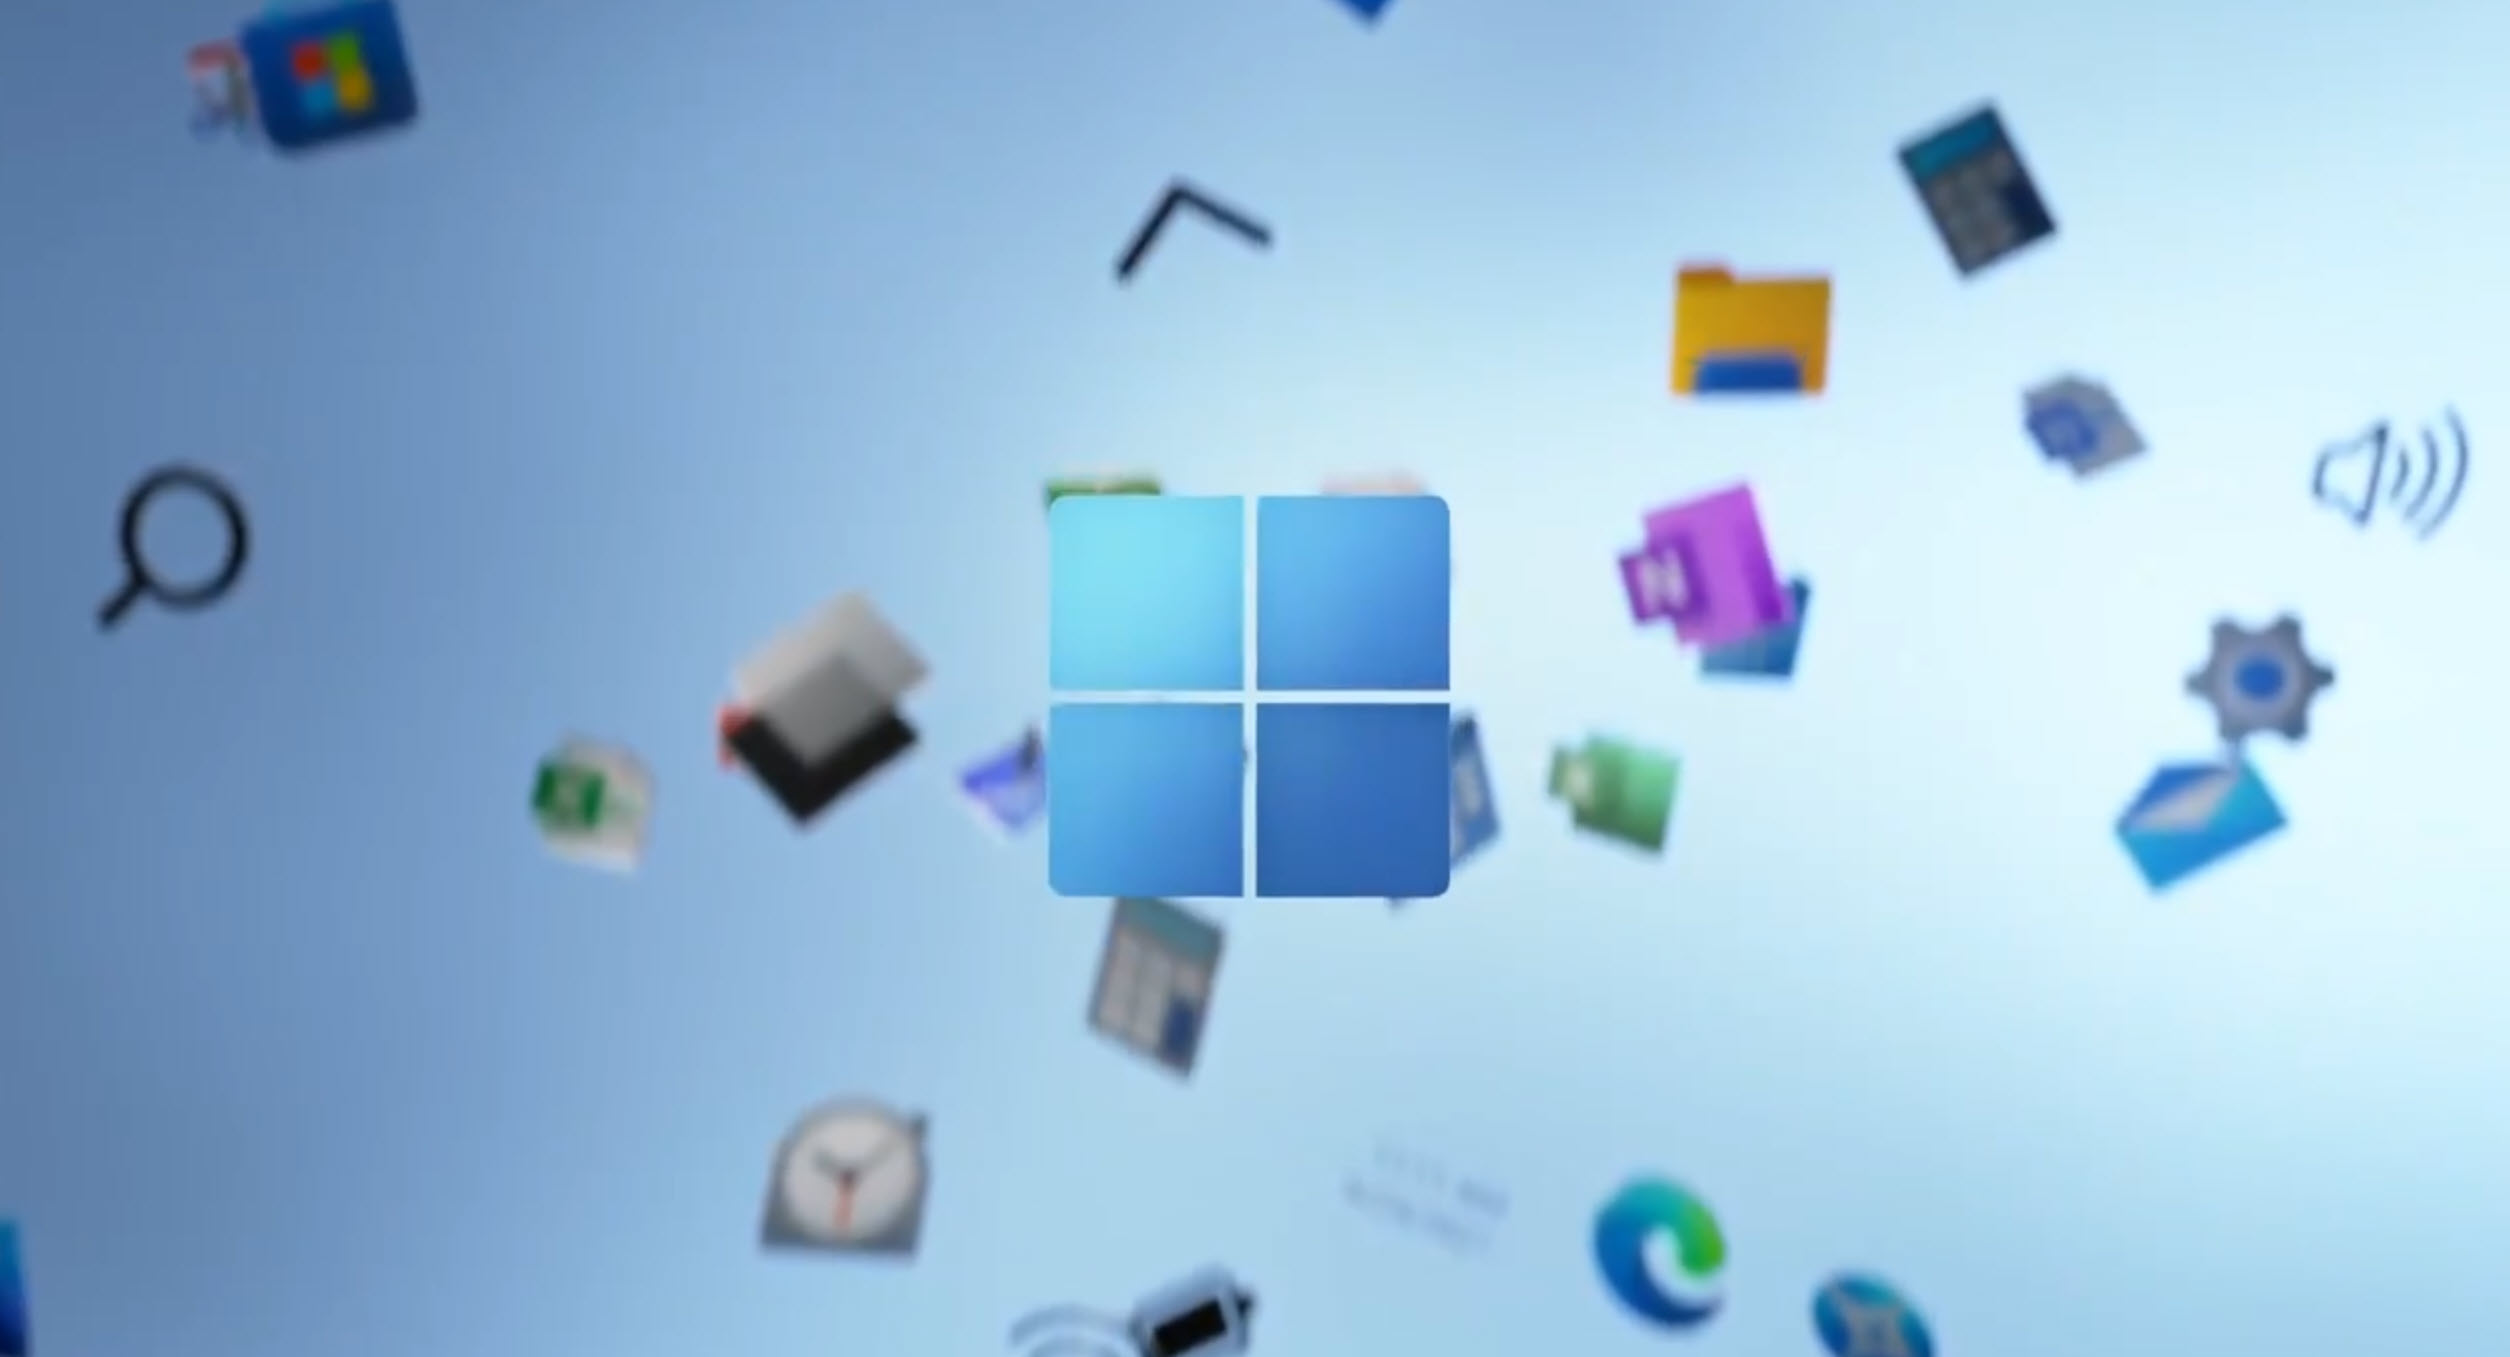 2021 06 24 22 54 52 ไมโครซอฟเปิดตัว Windows 11 อย่างเป็นทางการมาพร้อมฟีเจอร์การทำงานมากมาย